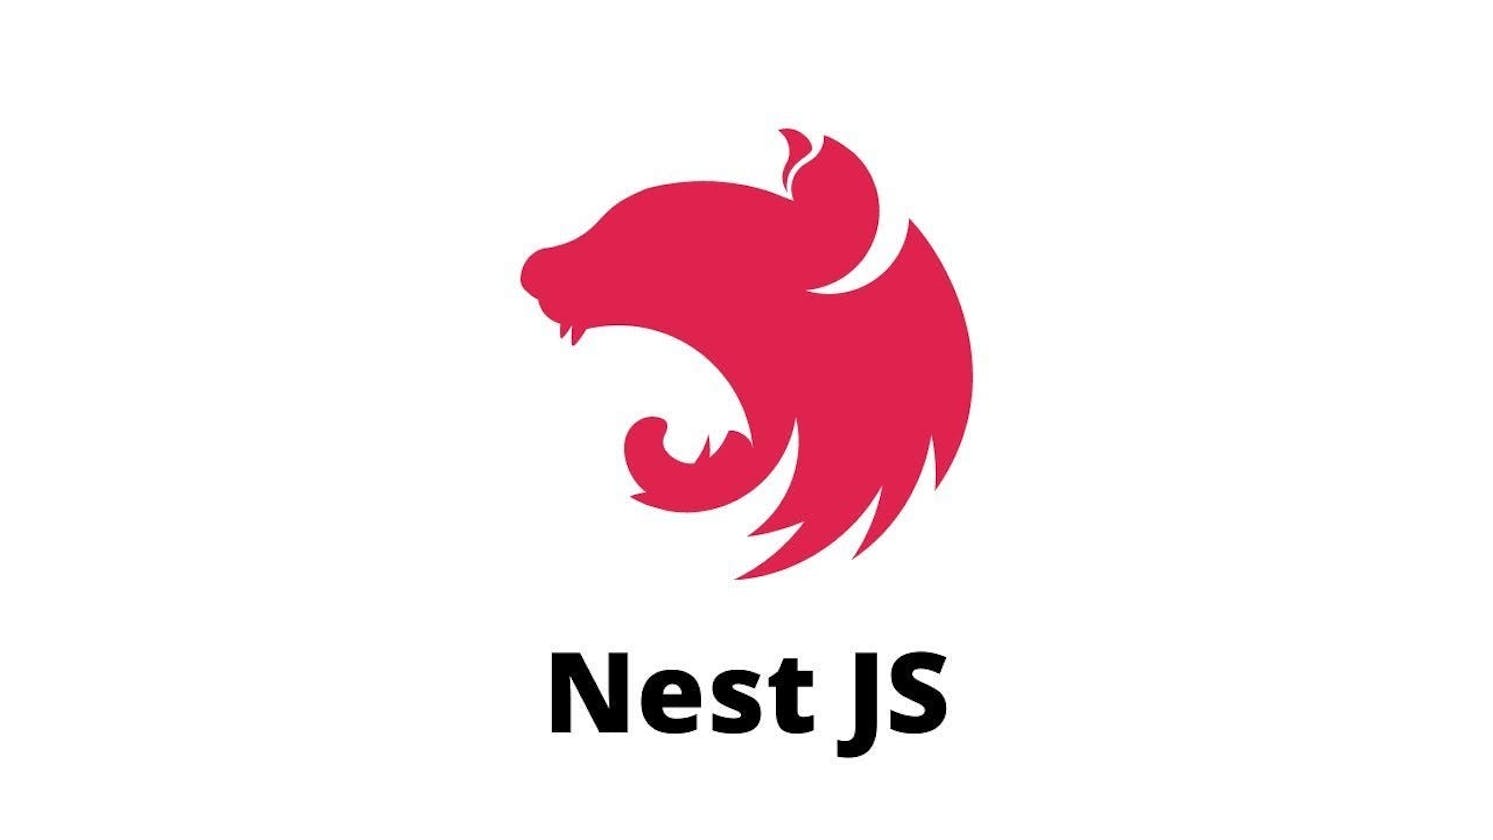 NestJS; A Beginner's Guide